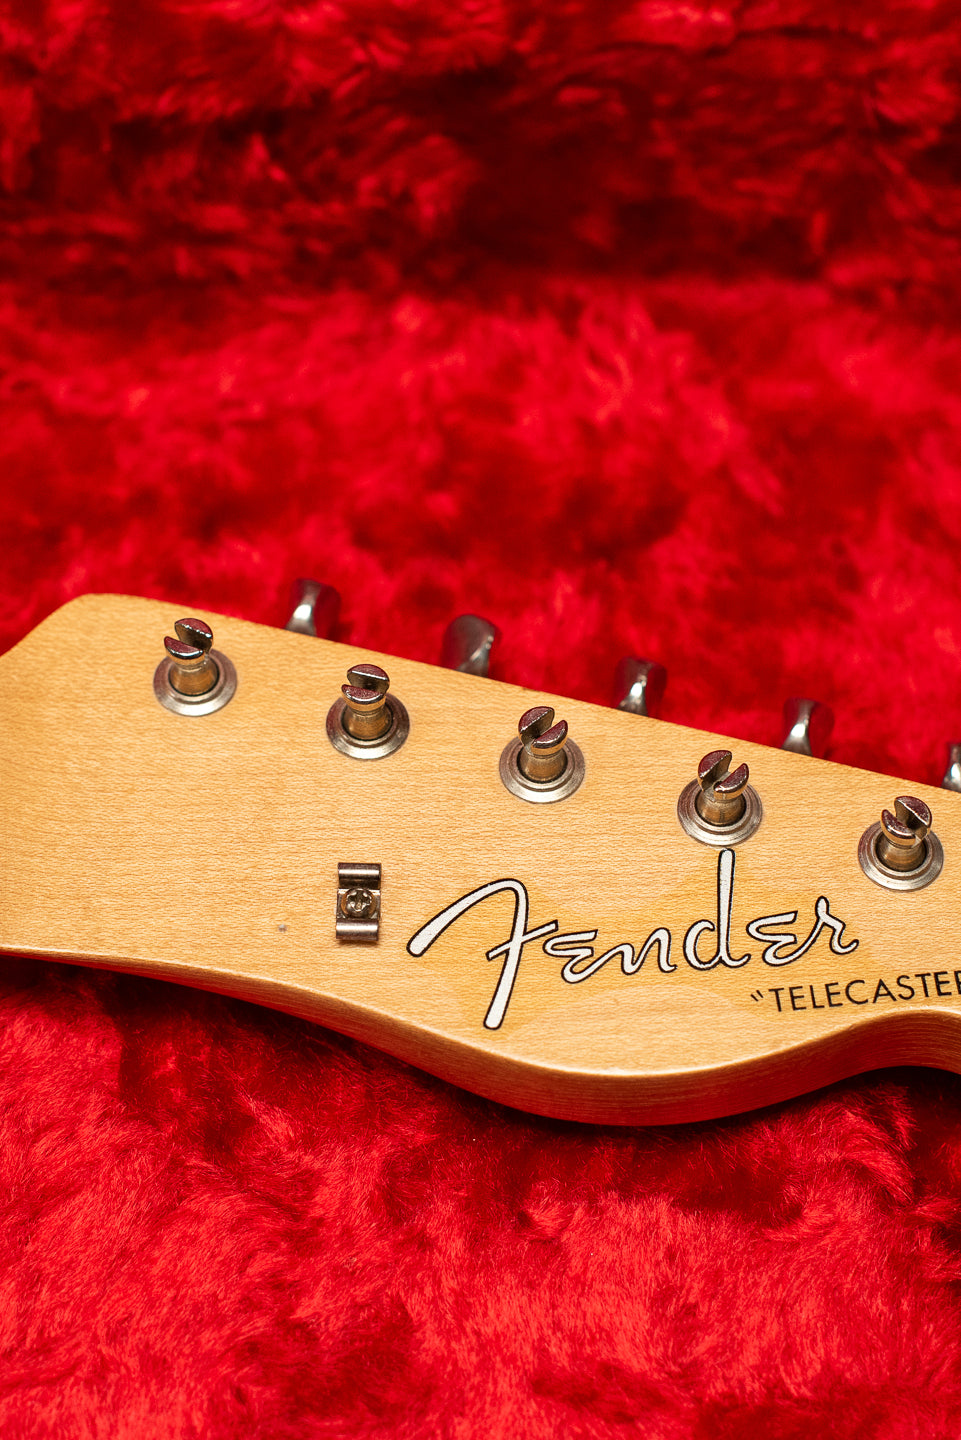 1957 Fender Telecaster Blond headstock, Fender logo